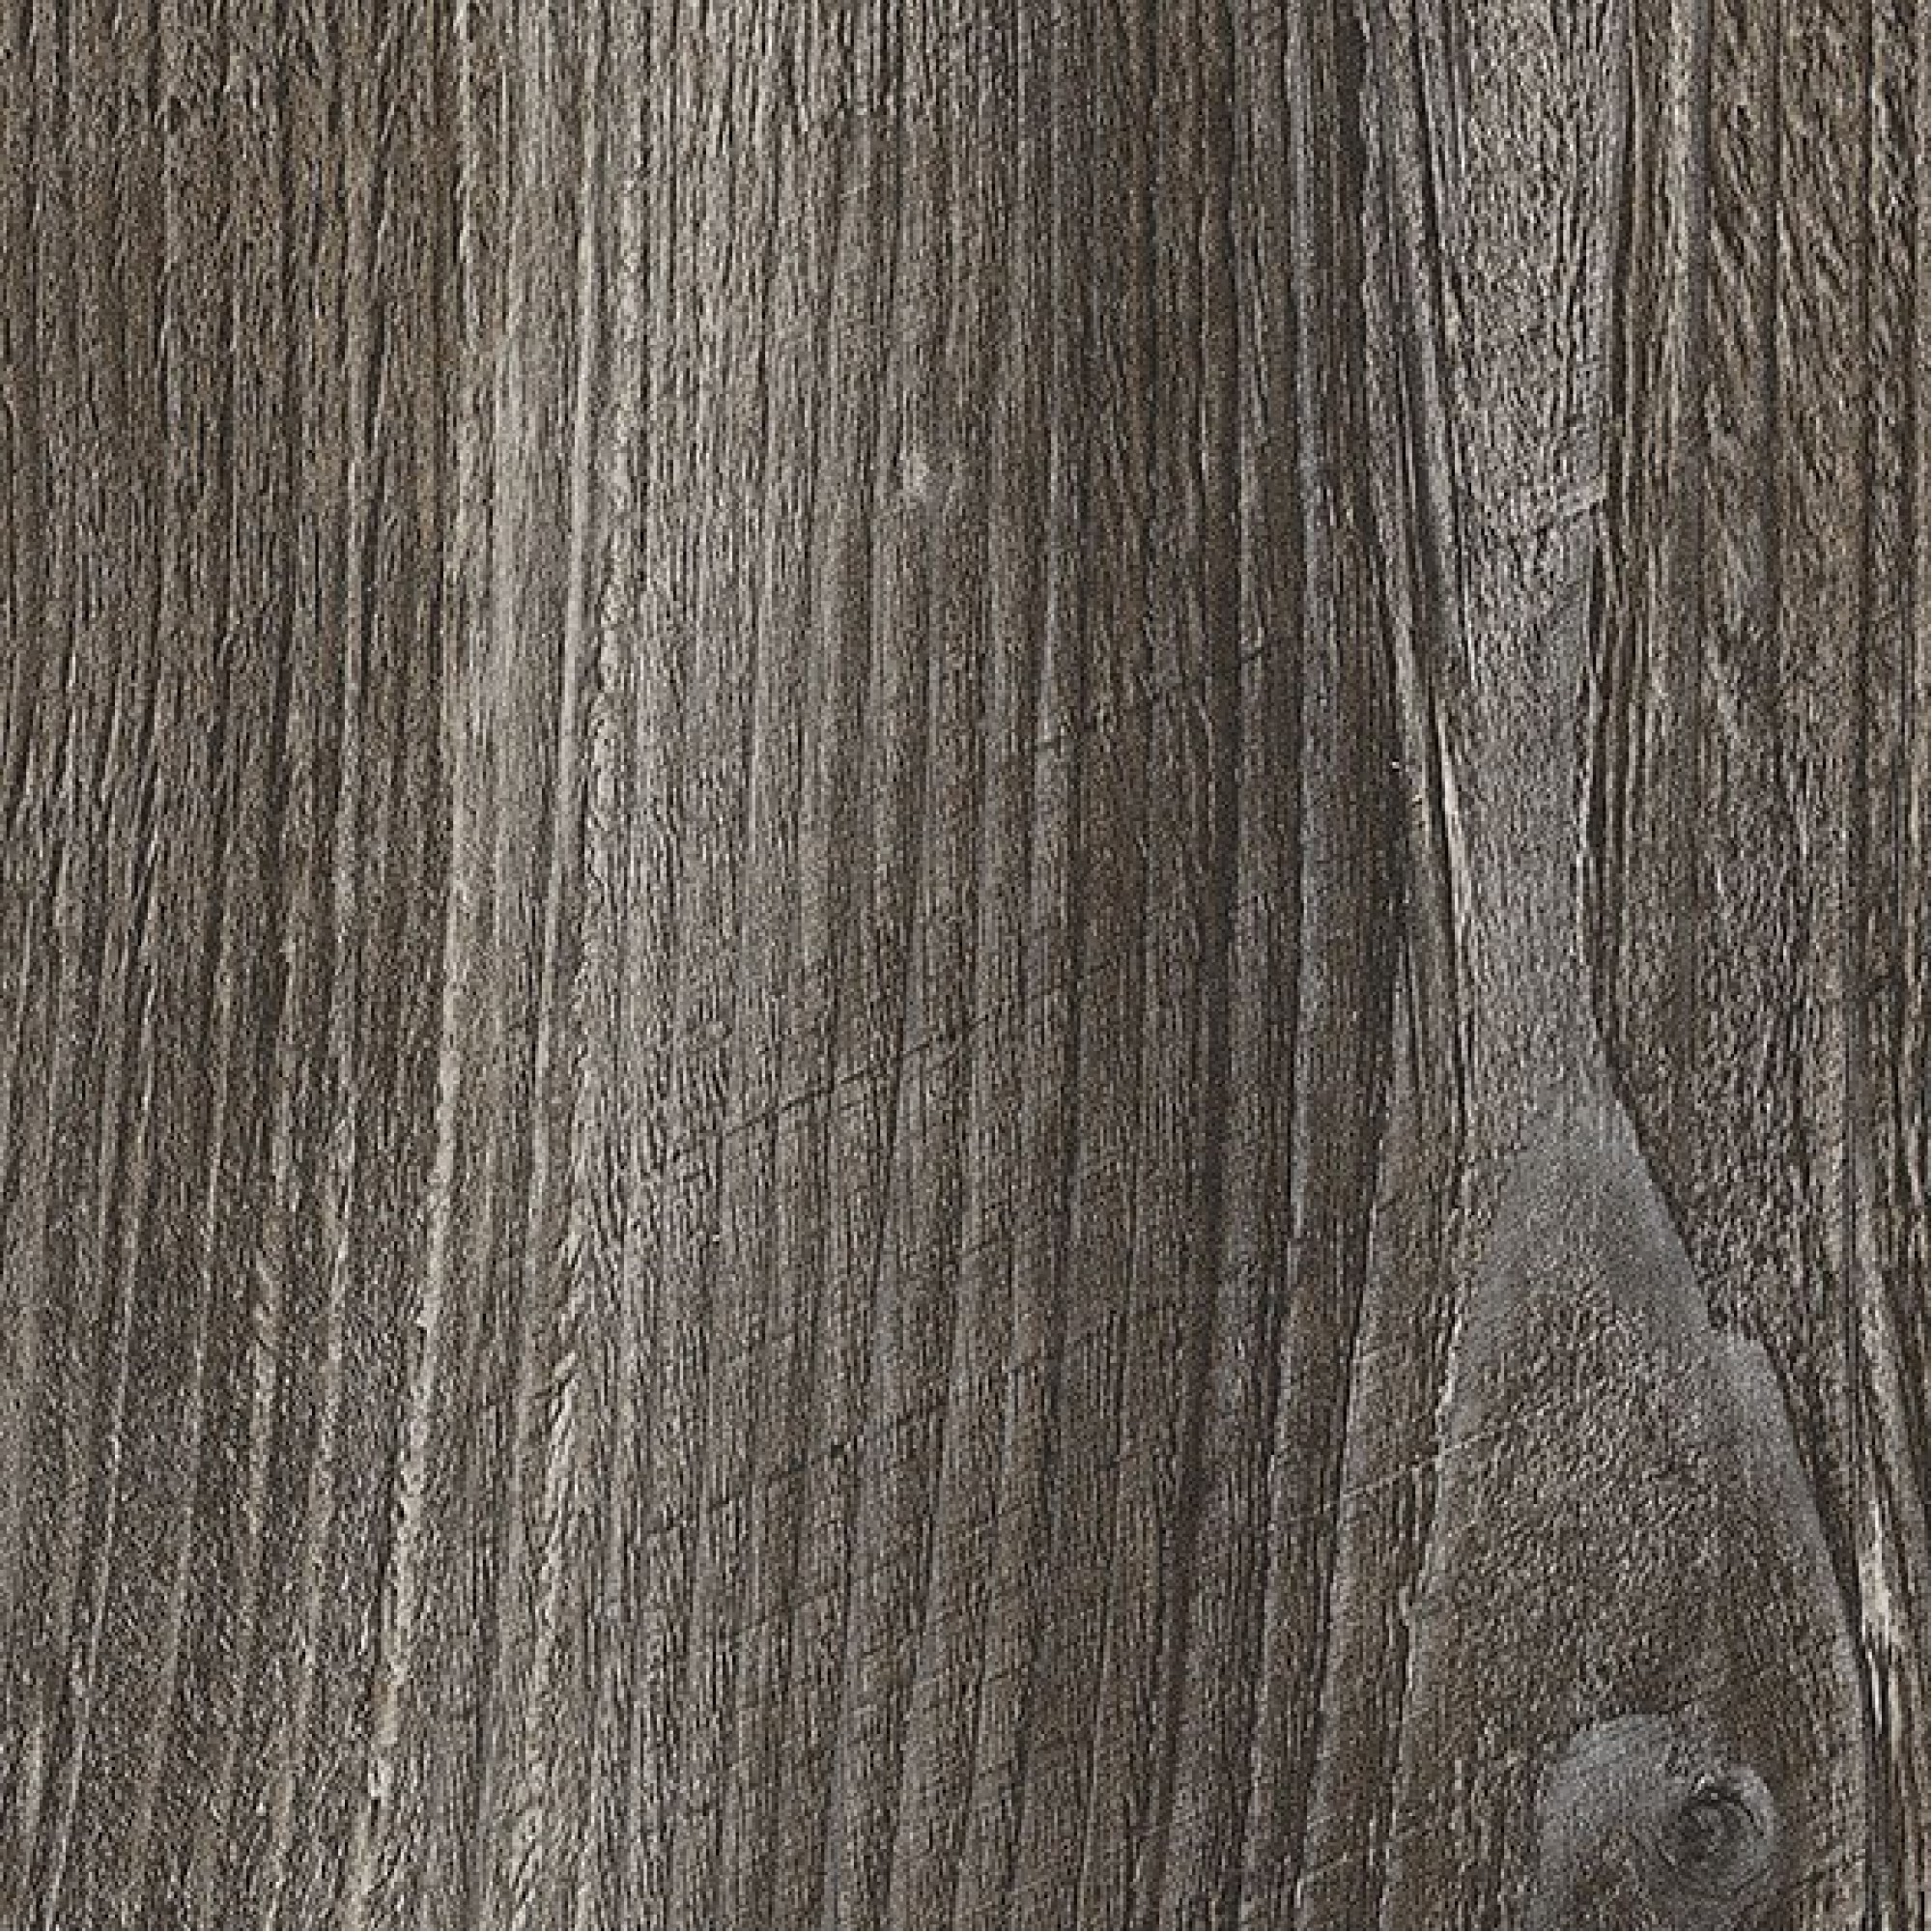 Стол обеденный Джаз ПР-М древесина коричневая темная орех DOM_Dzhaz_PR-M_OT-VN_04_VN